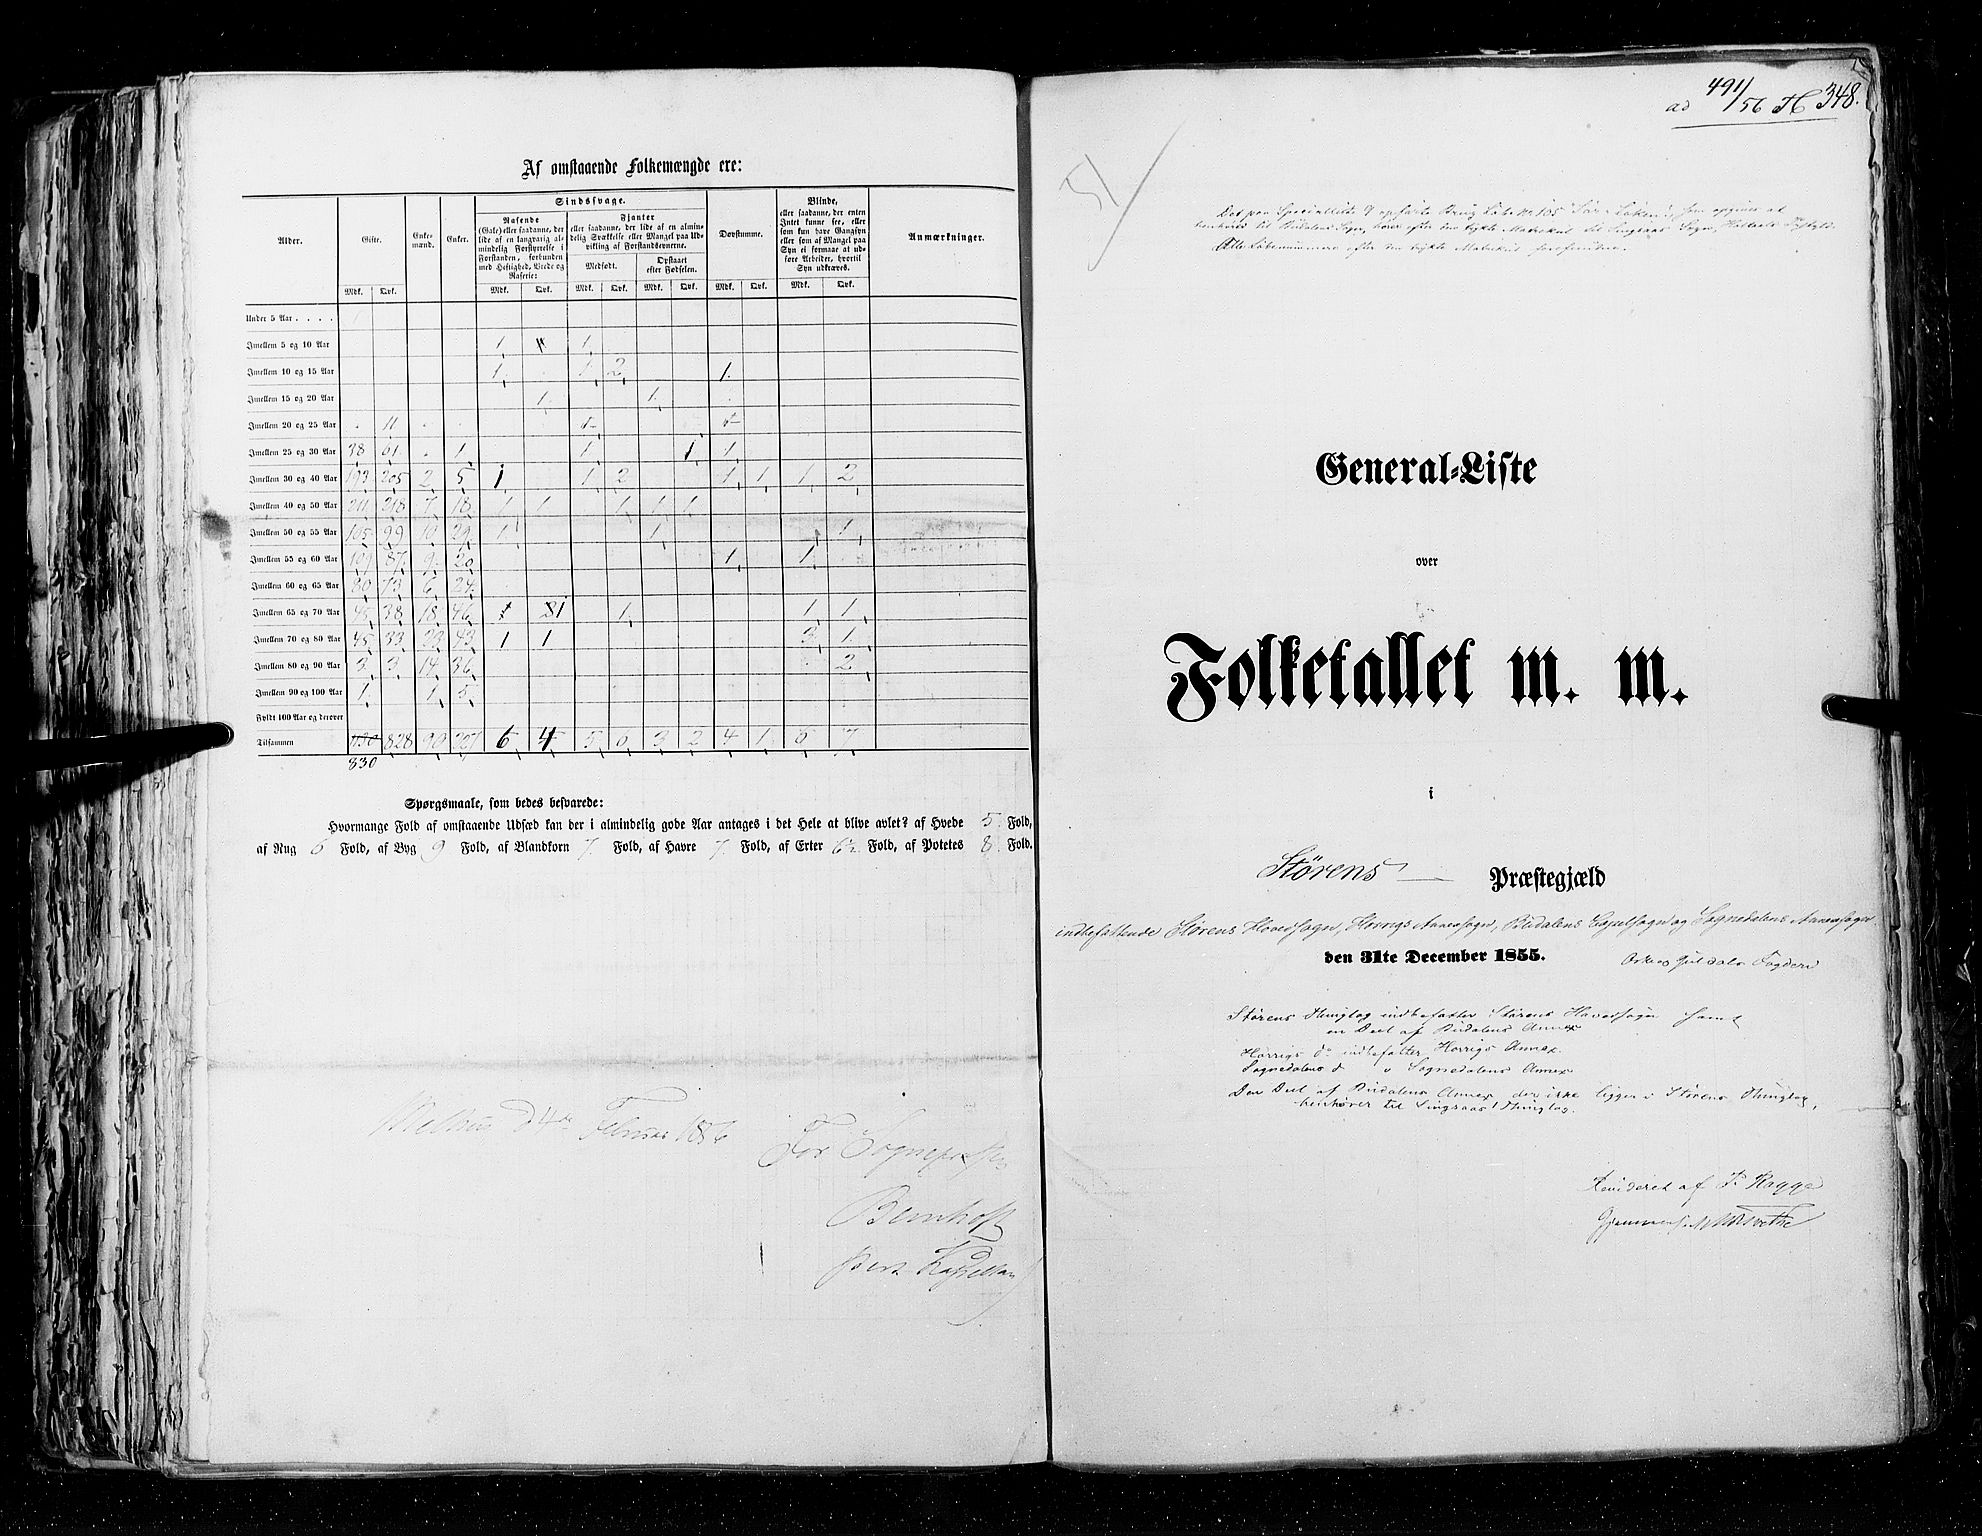 RA, Census 1855, vol. 5: Nordre Bergenhus amt, Romsdal amt og Søndre Trondhjem amt, 1855, p. 348